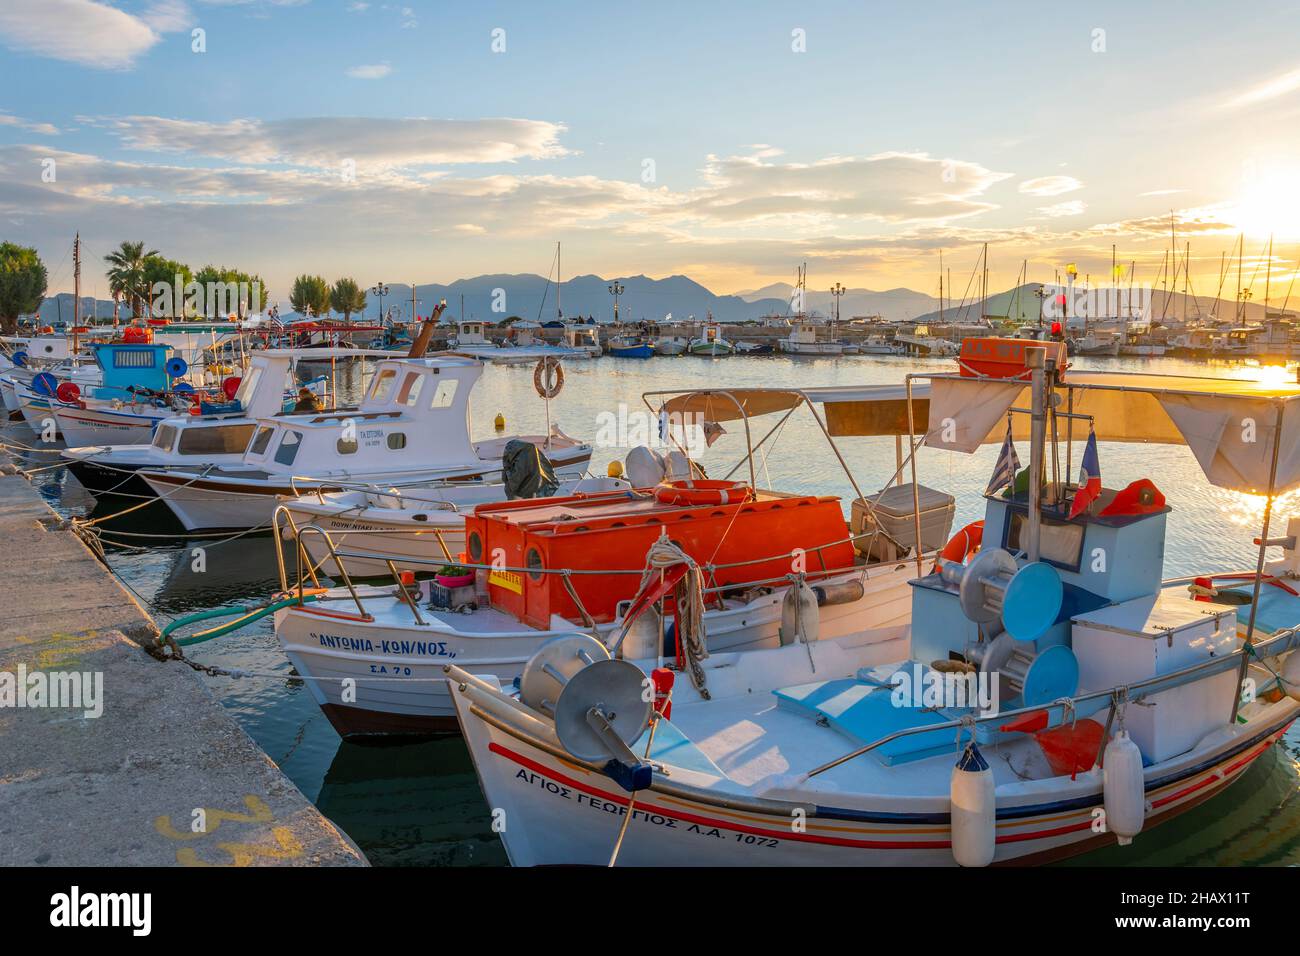 Des bateaux de pêche colorés bordent le port de l'île grecque d'Aegina, Grèce au crépuscule, avec la promenade du front de mer en vue. Banque D'Images